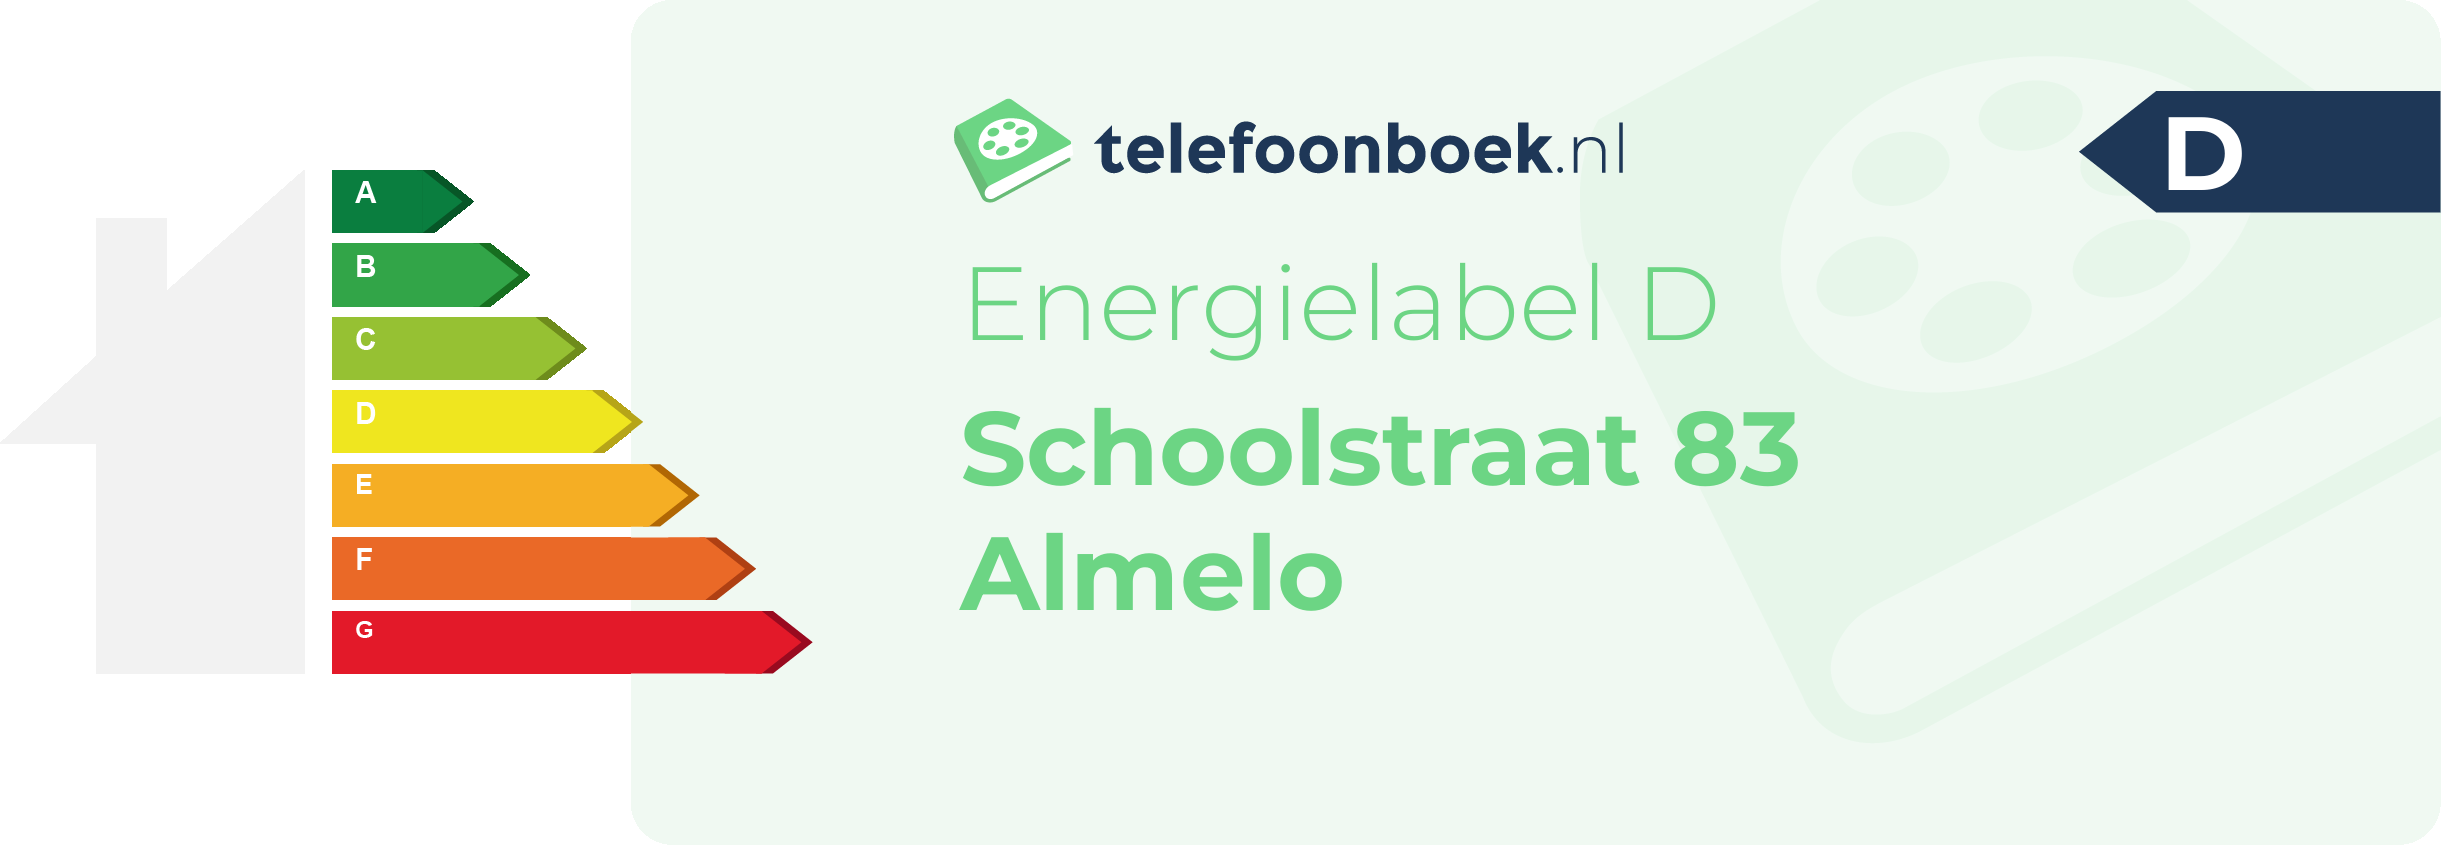 Energielabel Schoolstraat 83 Almelo